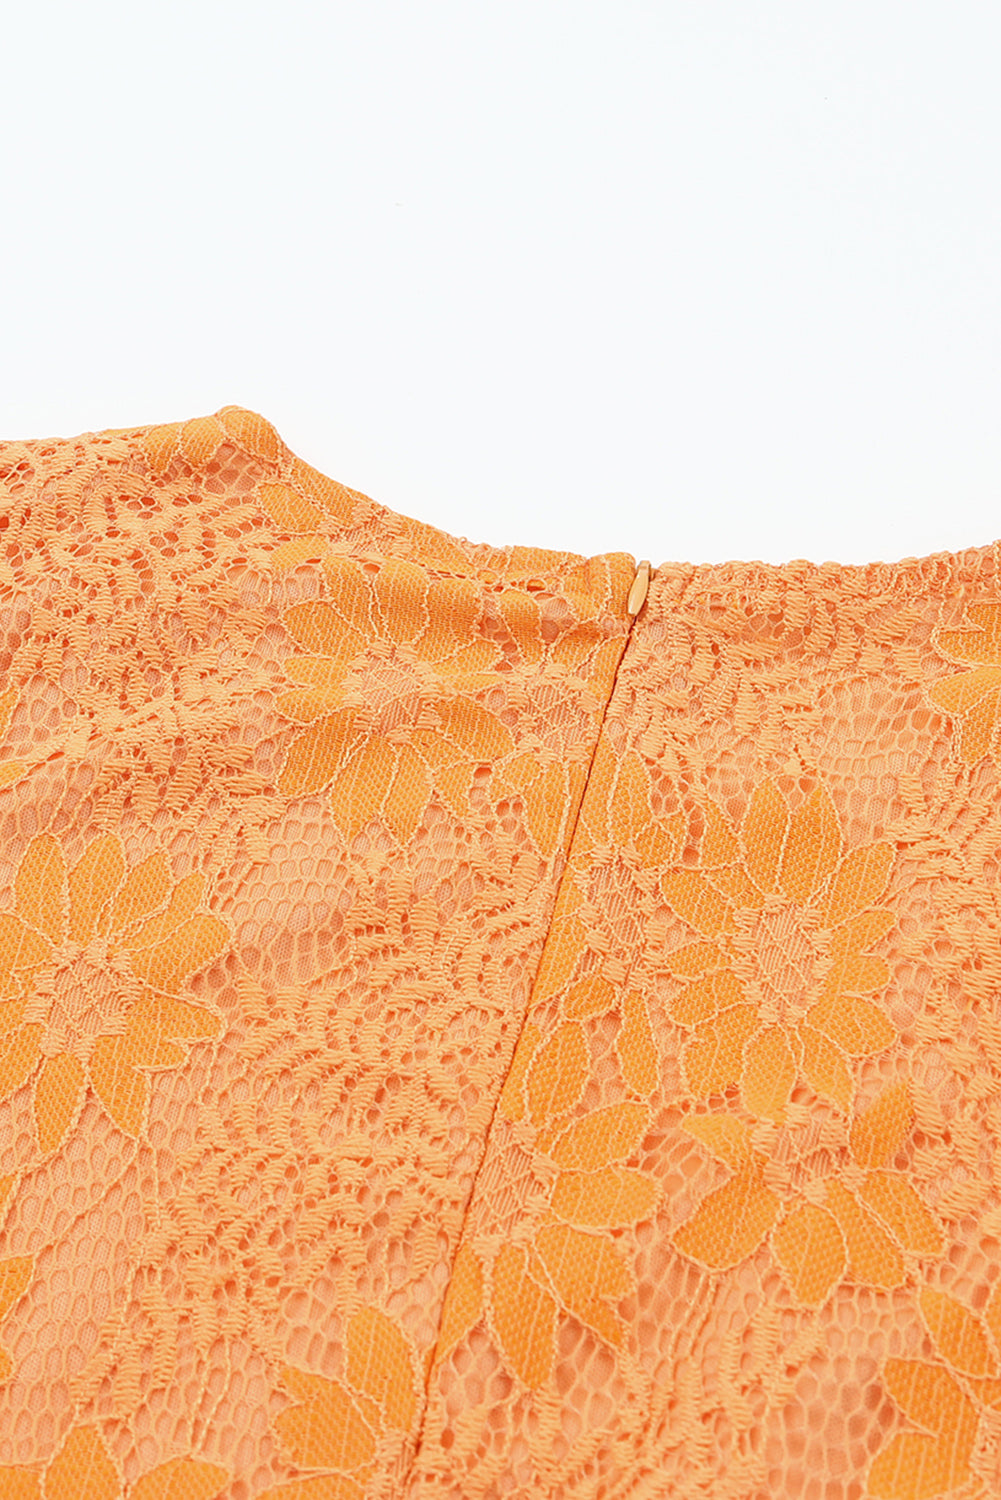 Orange Flutter Sleeve Wrap V Neck Floral Lace Short Dress Mini Dresses JT's Designer Fashion